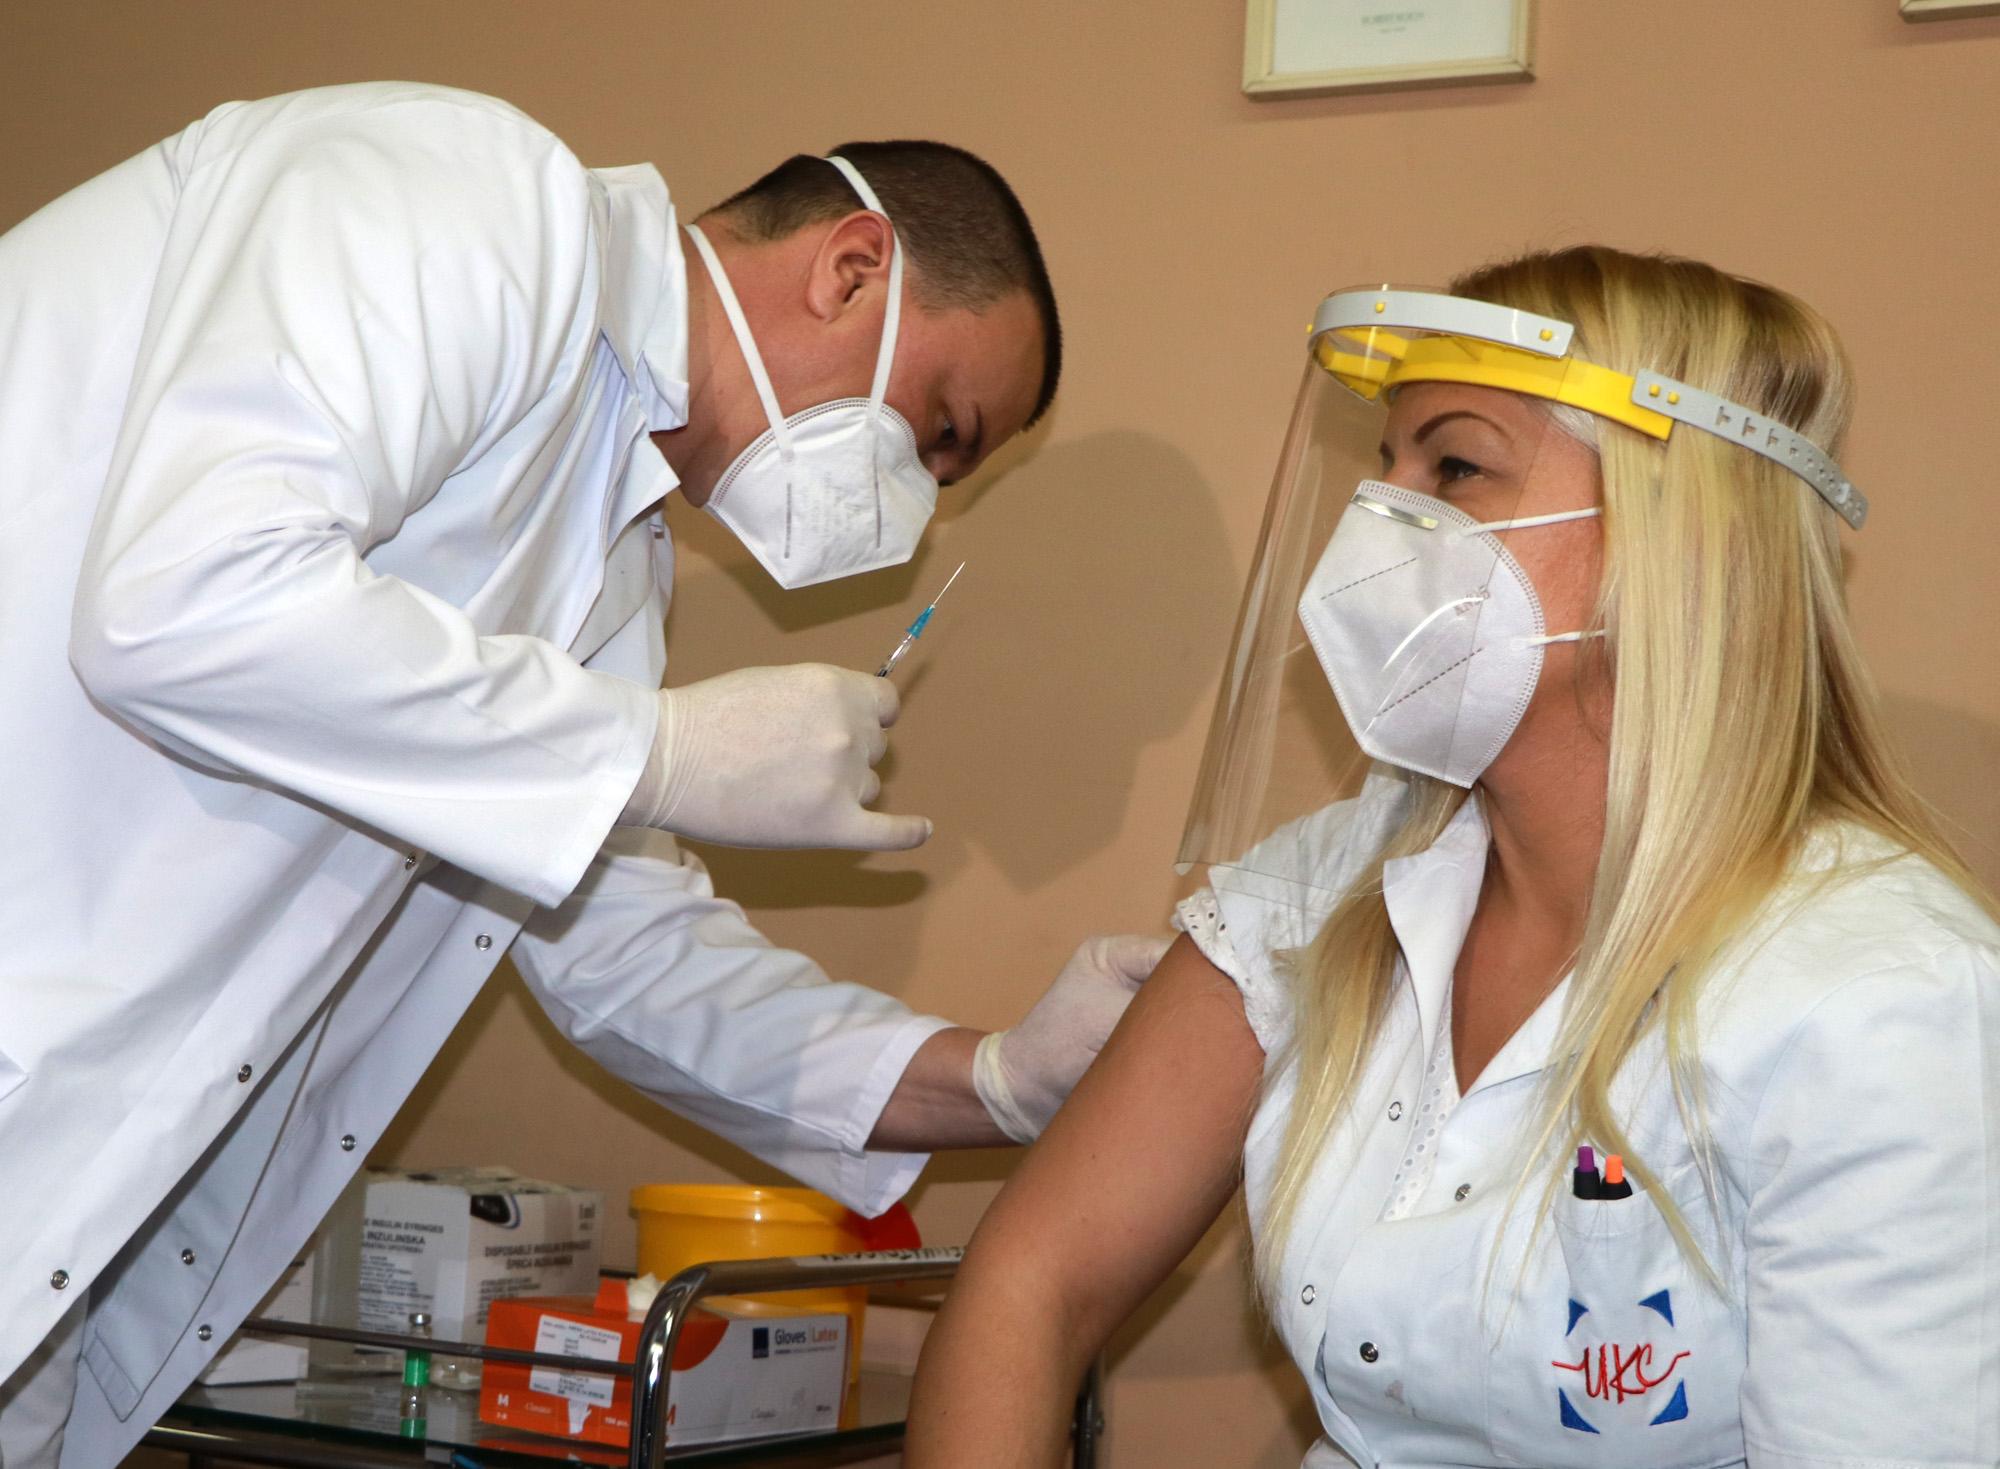 Prvih 30 uposlenika UKC Tuzla primili vakcine AstraZeneca